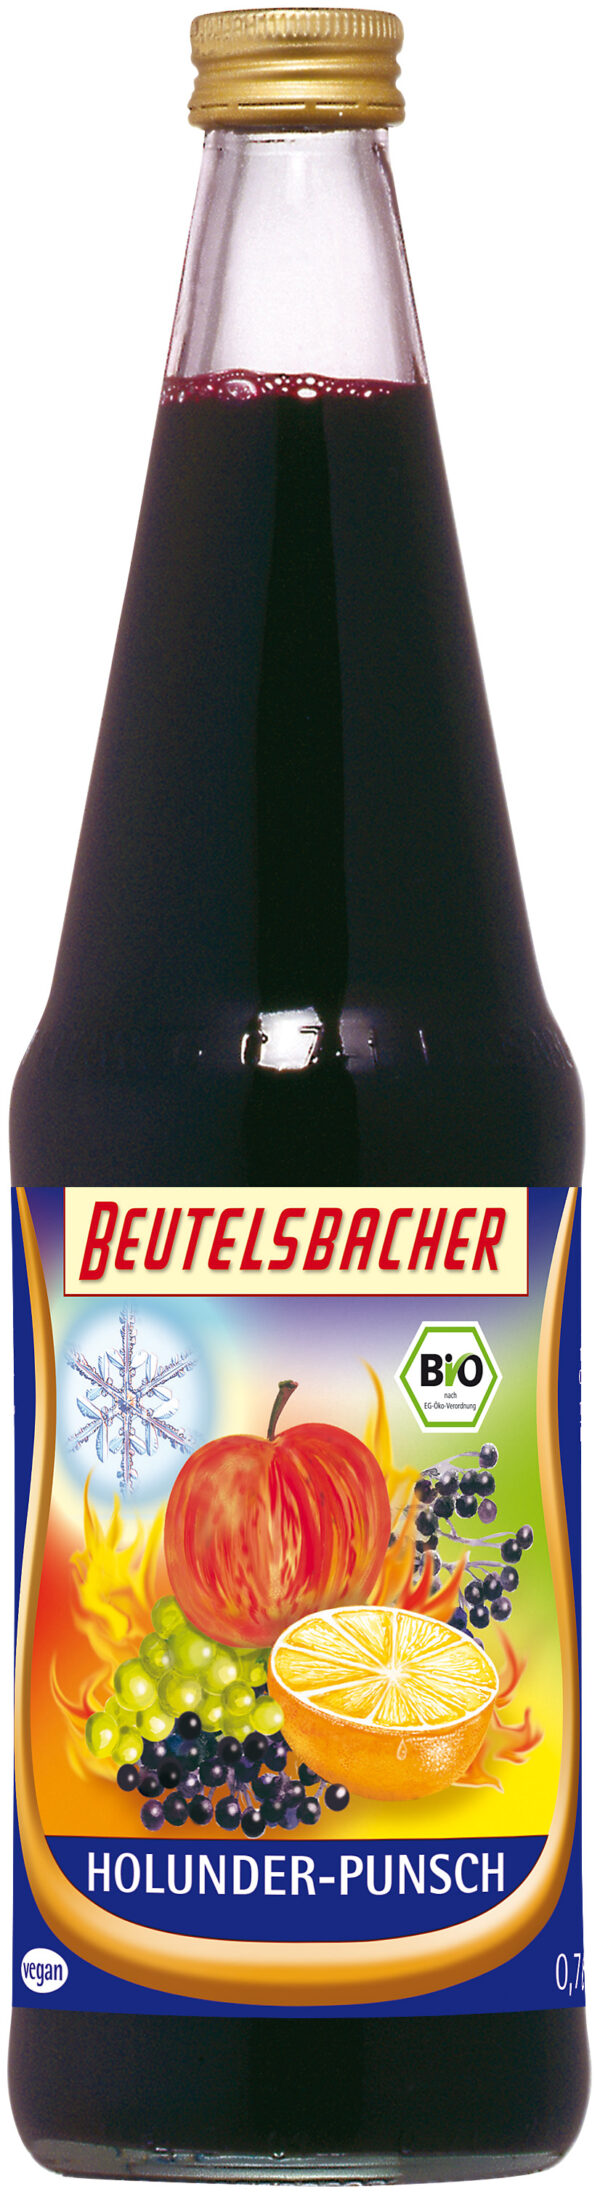 BEUTELSBACHER Bio Holunder-Punsch 6 x 0,7l